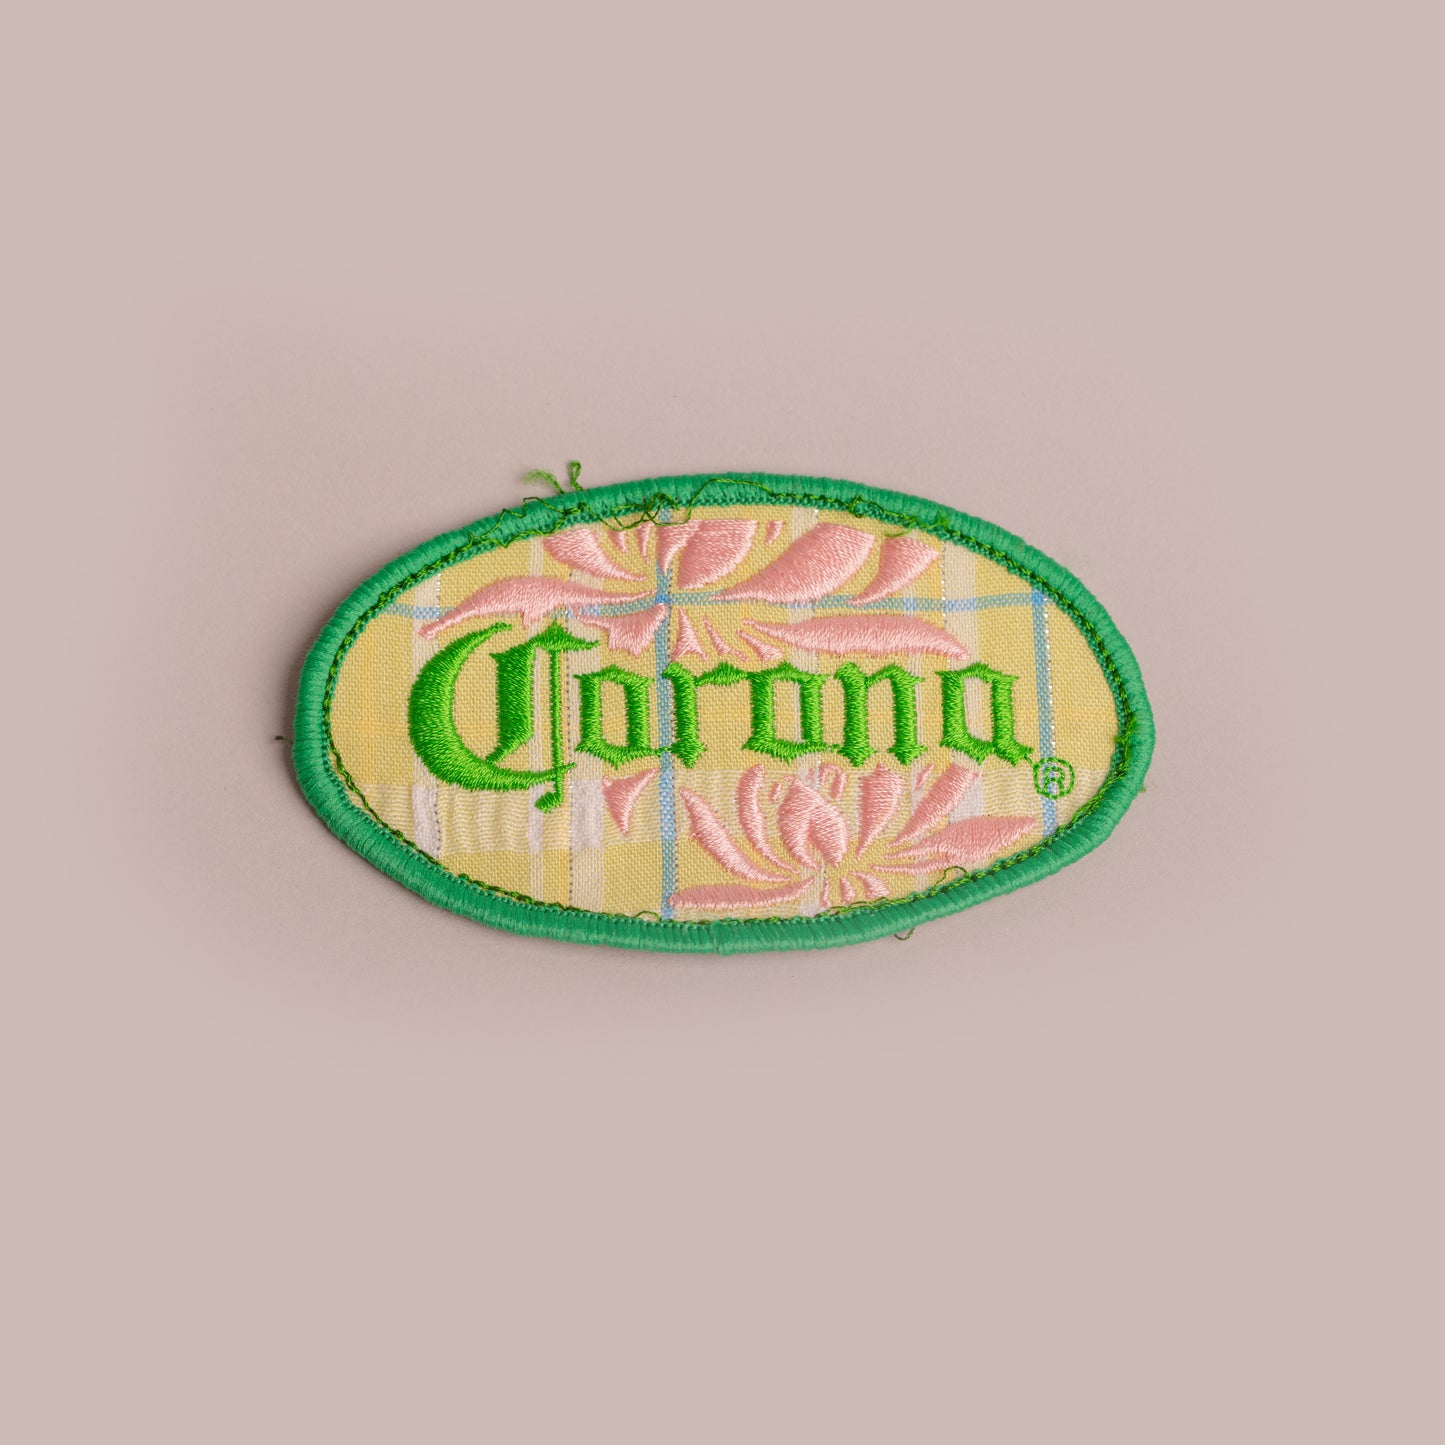 Vintage Patch - Corona